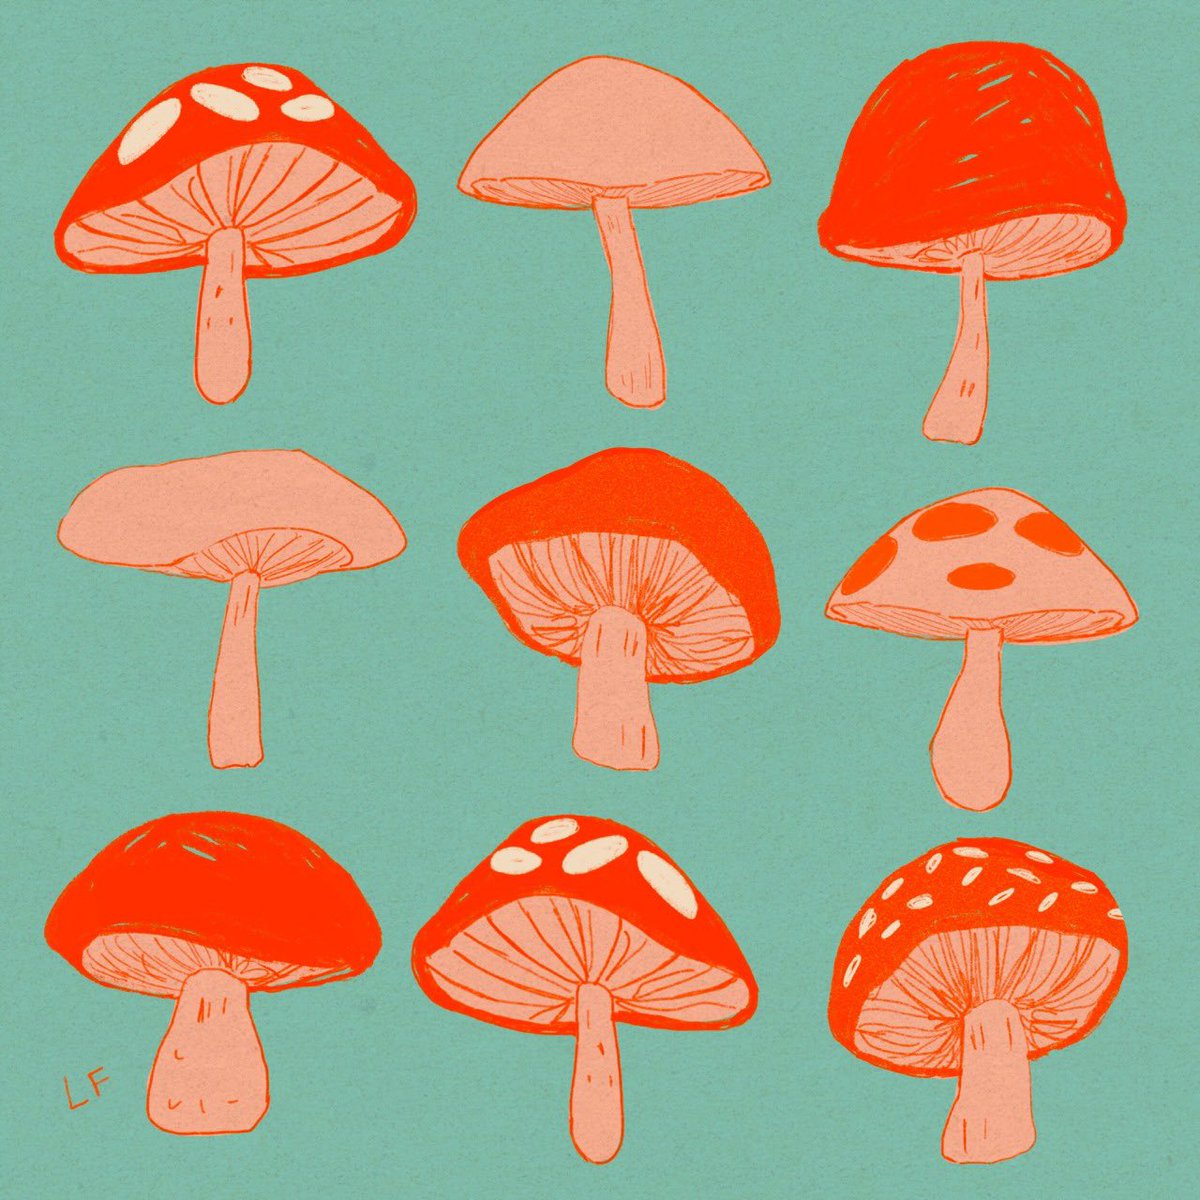 「Mushrooms 🍄 」|Libbyのイラスト